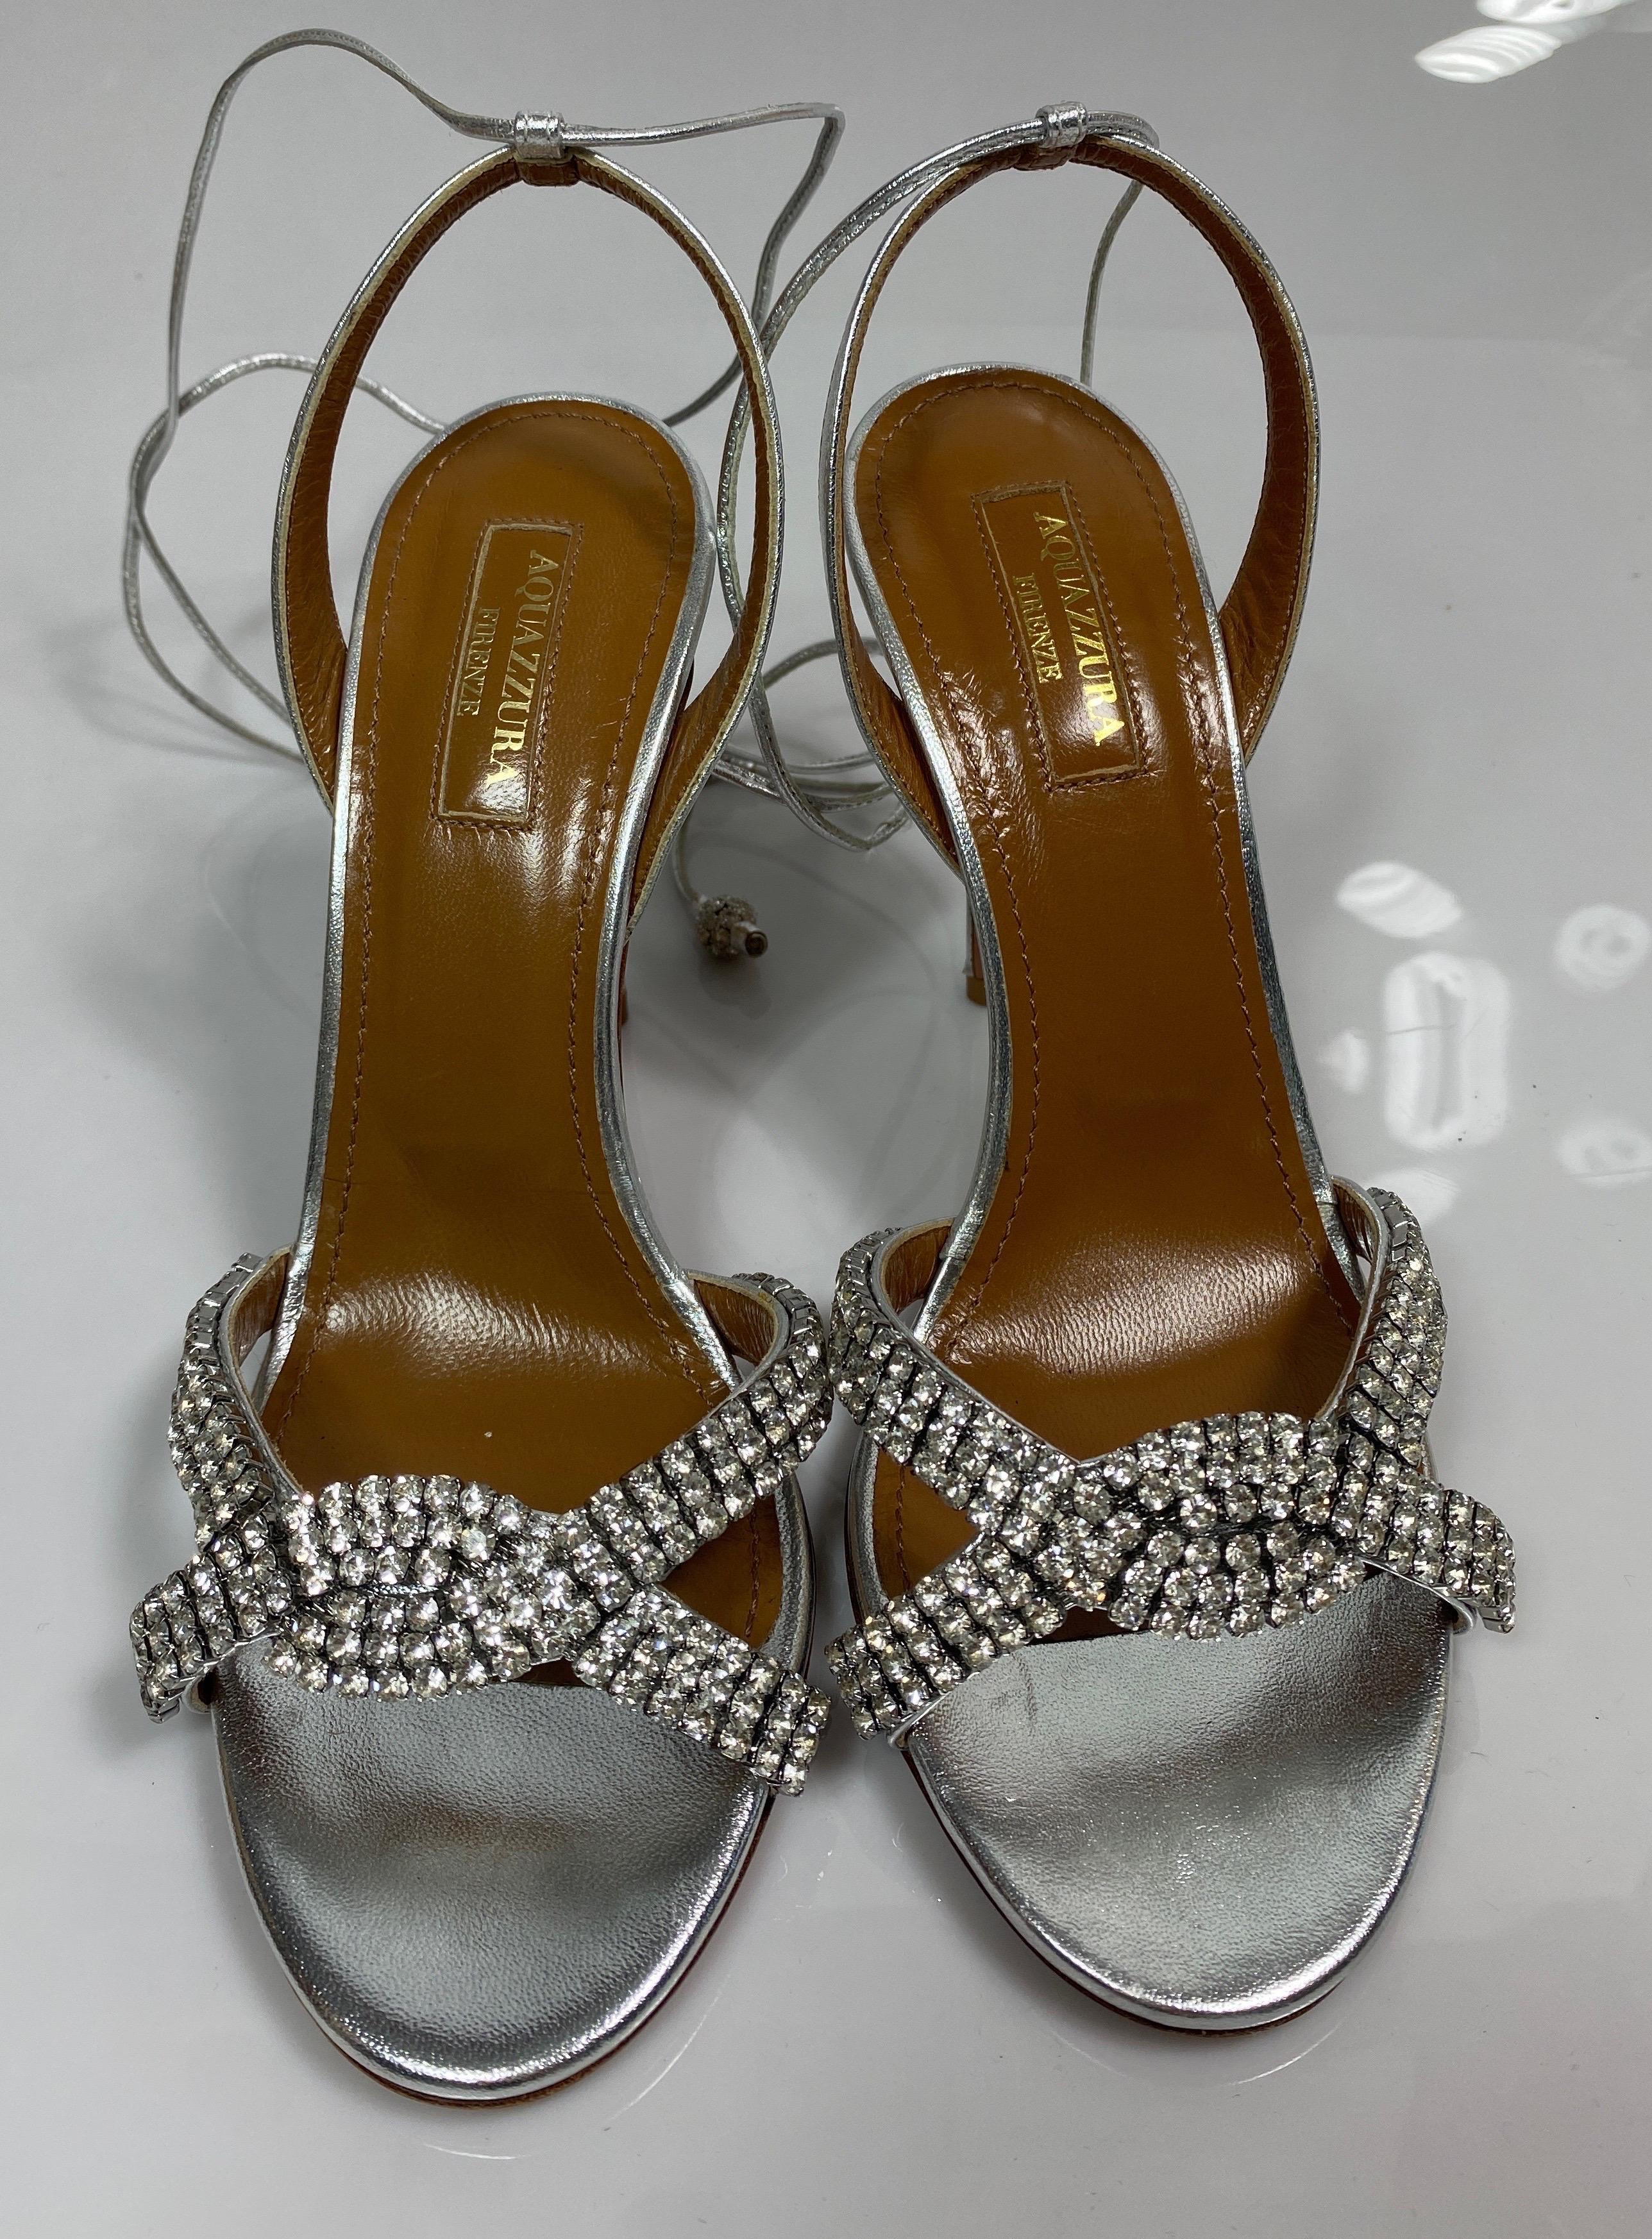 Aquazurra Silver “Dazzling Sandal” crystal embellished heels-Size 36 For Sale 2